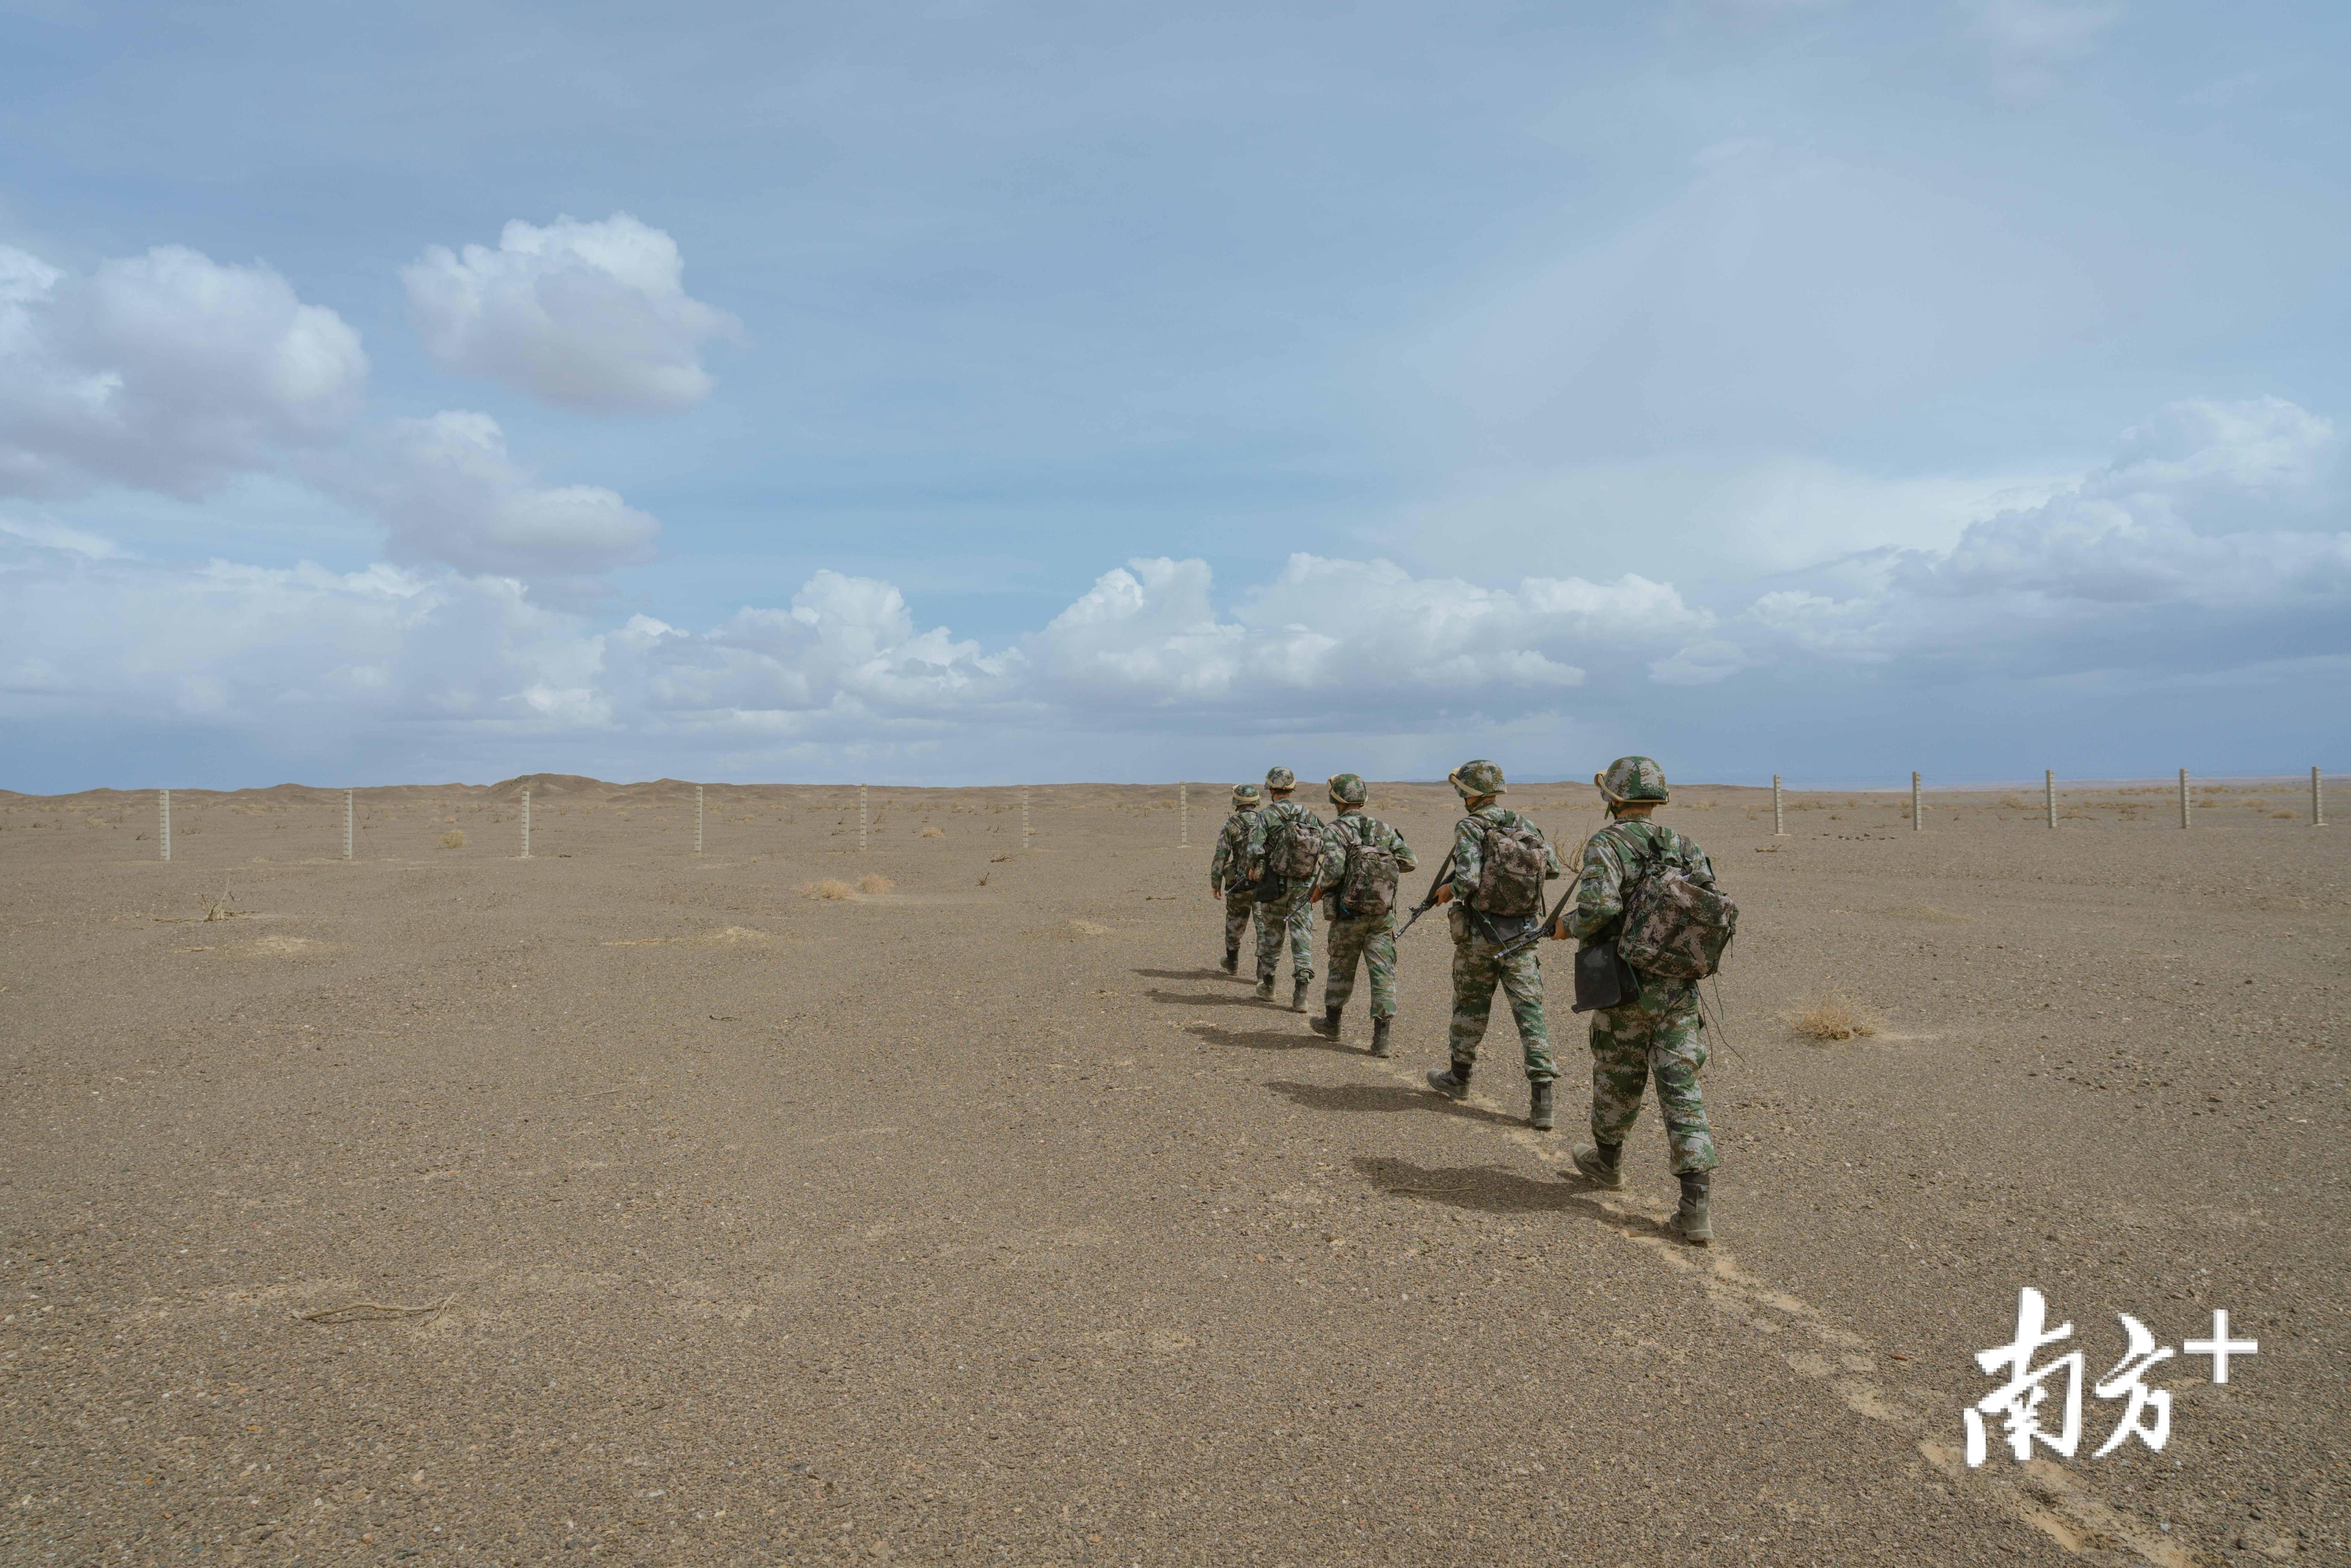 军人版沙漠骆驼图片